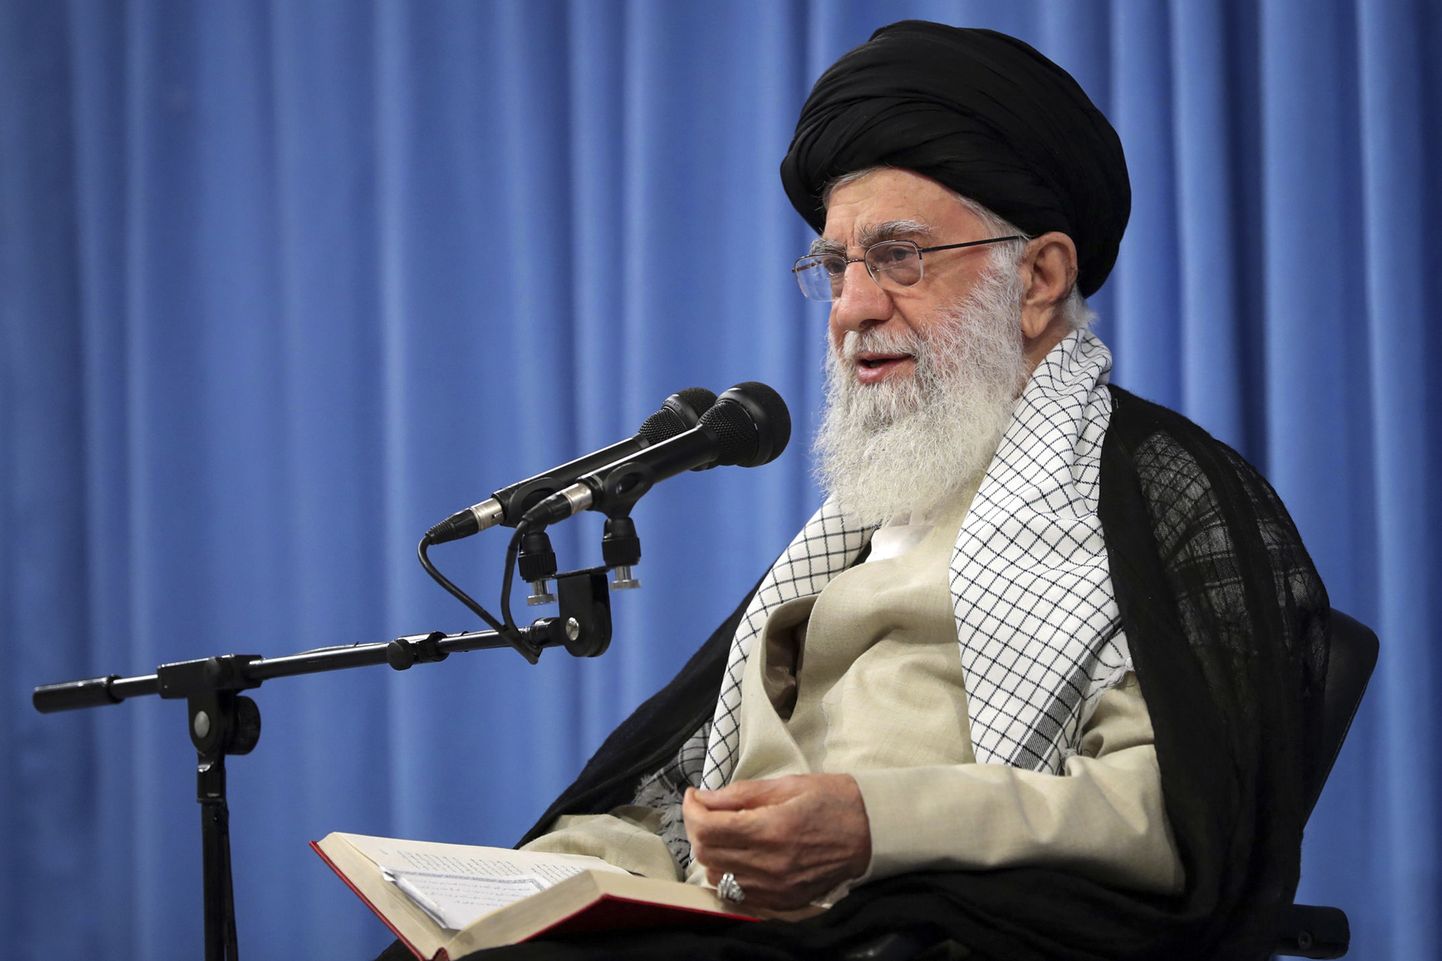 Iraani kõrgeim juht ajatolla Ali Khamenei.